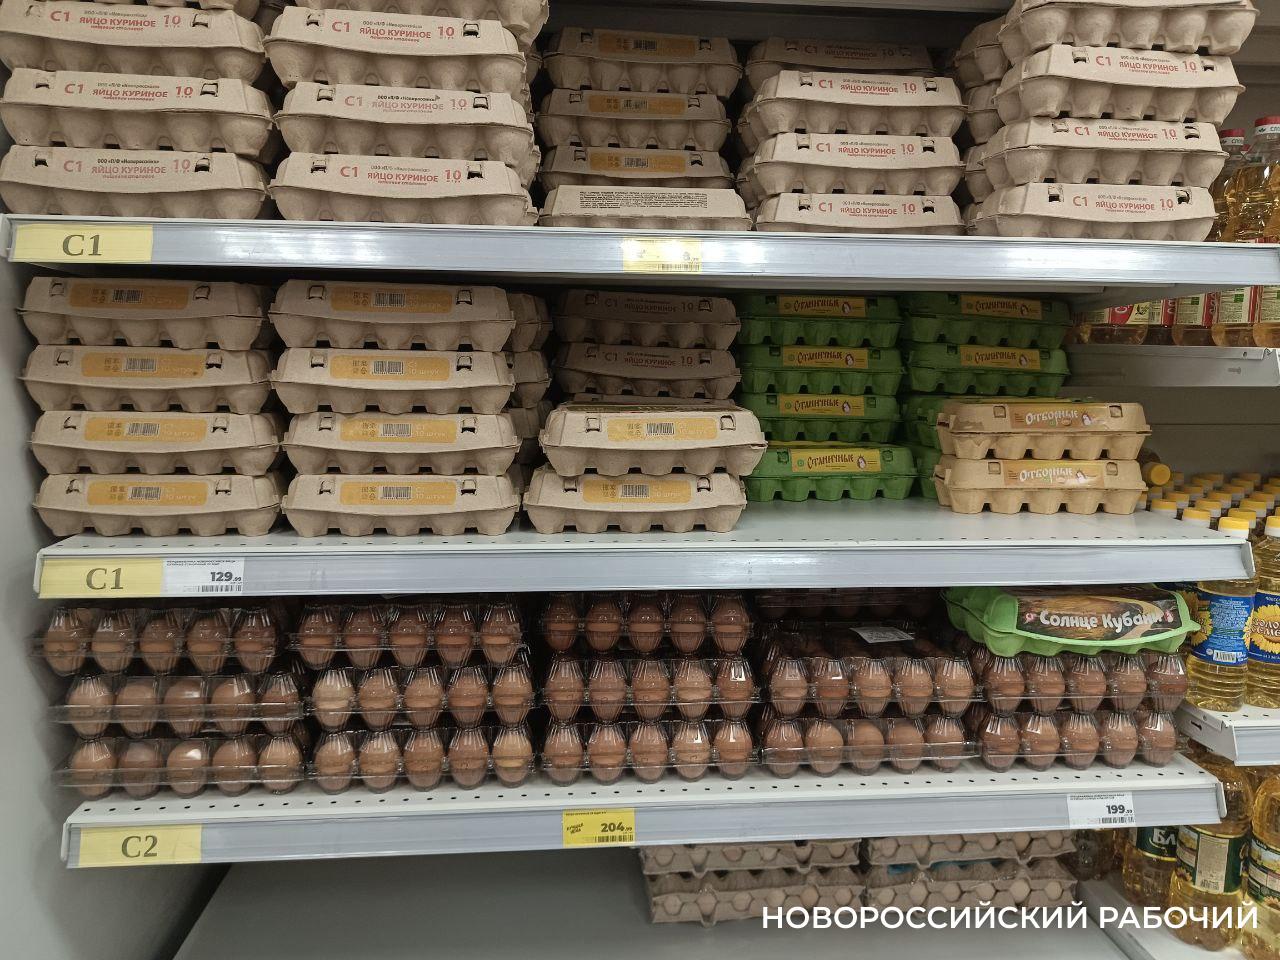 Турция готова покупать новороссийские яйца. А в Новороссийске цены на них пошли вниз  